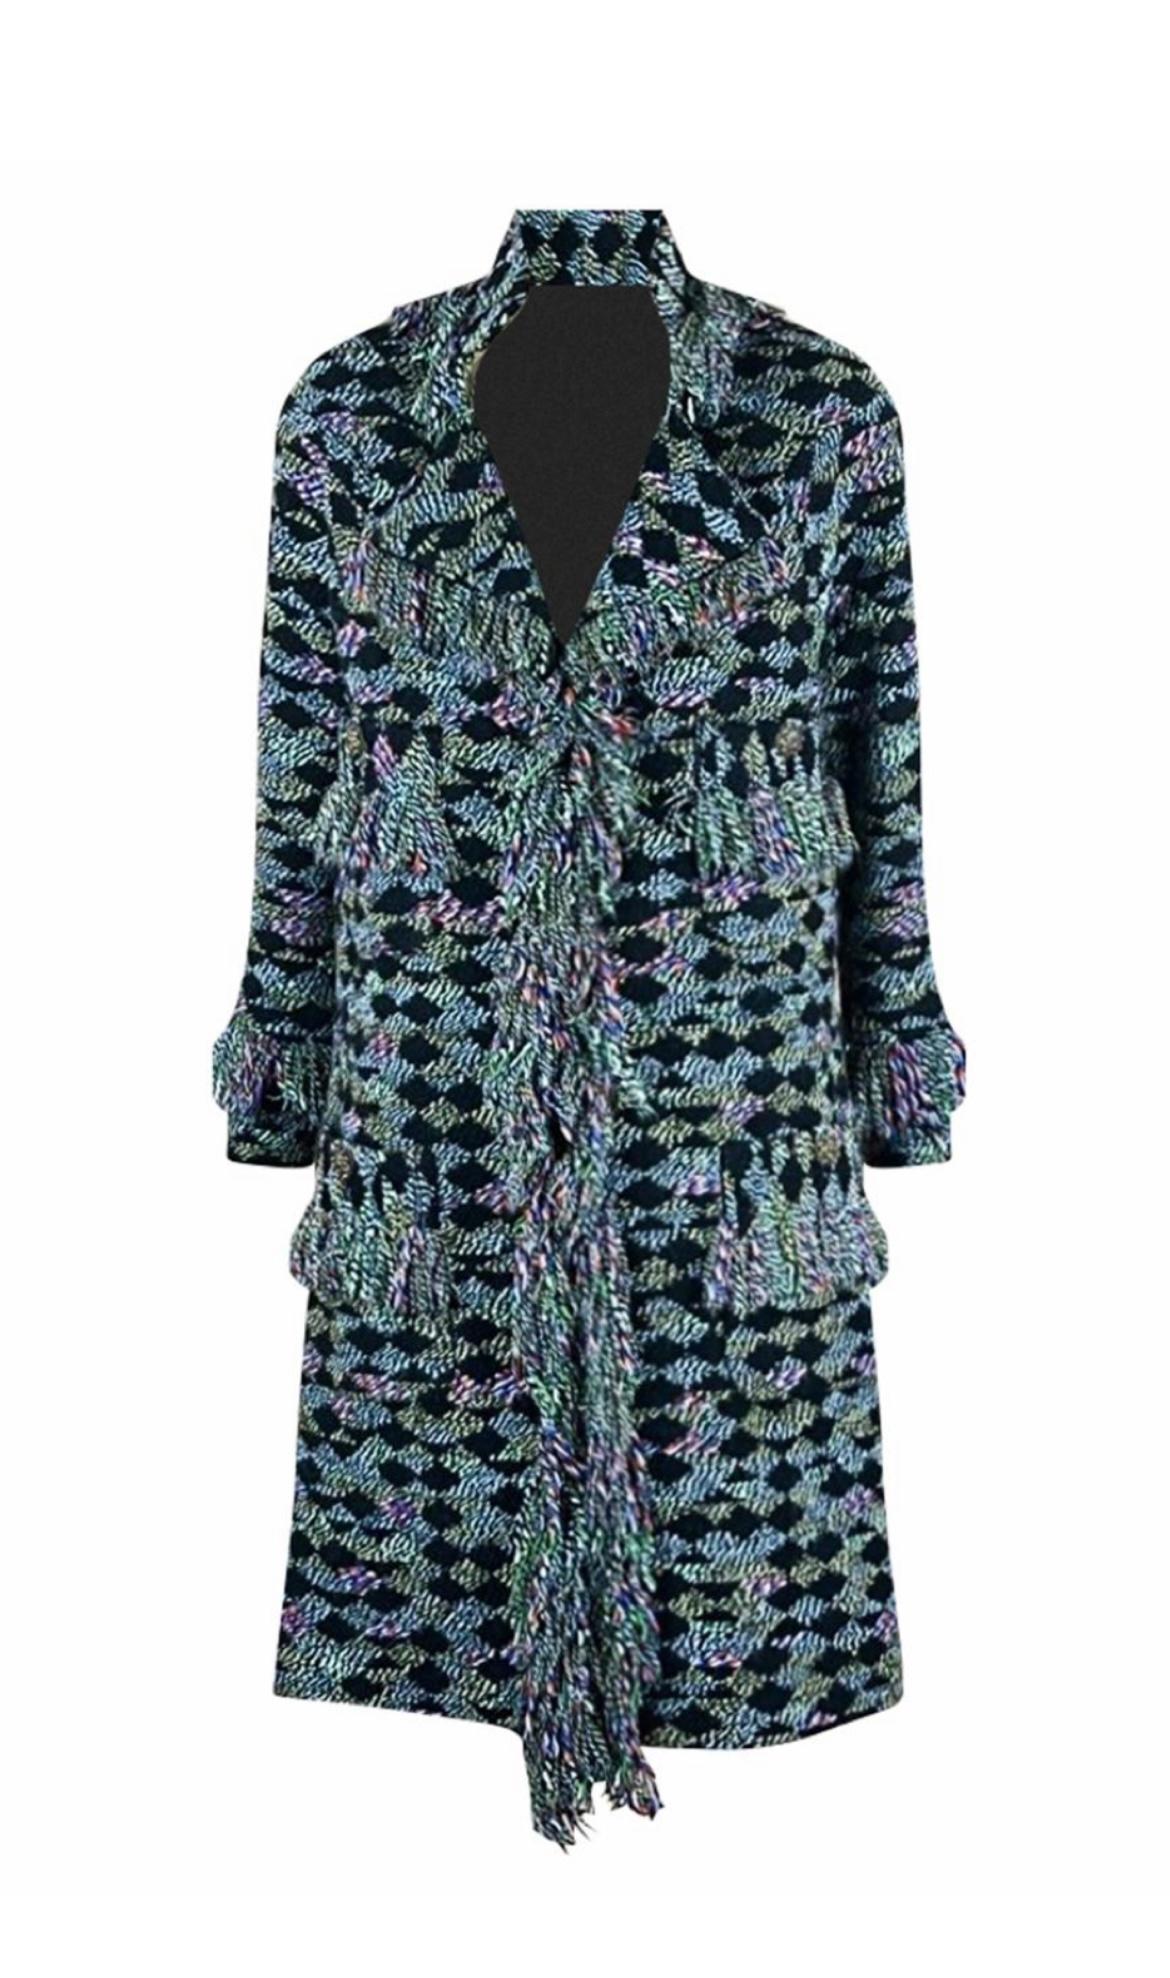 Atemberaubender Chanel Tweed-Mantel von Runway of Paris/SALZBURG Metiers d'Art Collection, 2015 Pre-Fall
Verkaufspreis ca. 9,000$
- aus Fantasie-Tweed mit charakteristischen Franseneinfassungen
- CC Logo Jewel Knöpfe mit Natursteinen und Kristallen